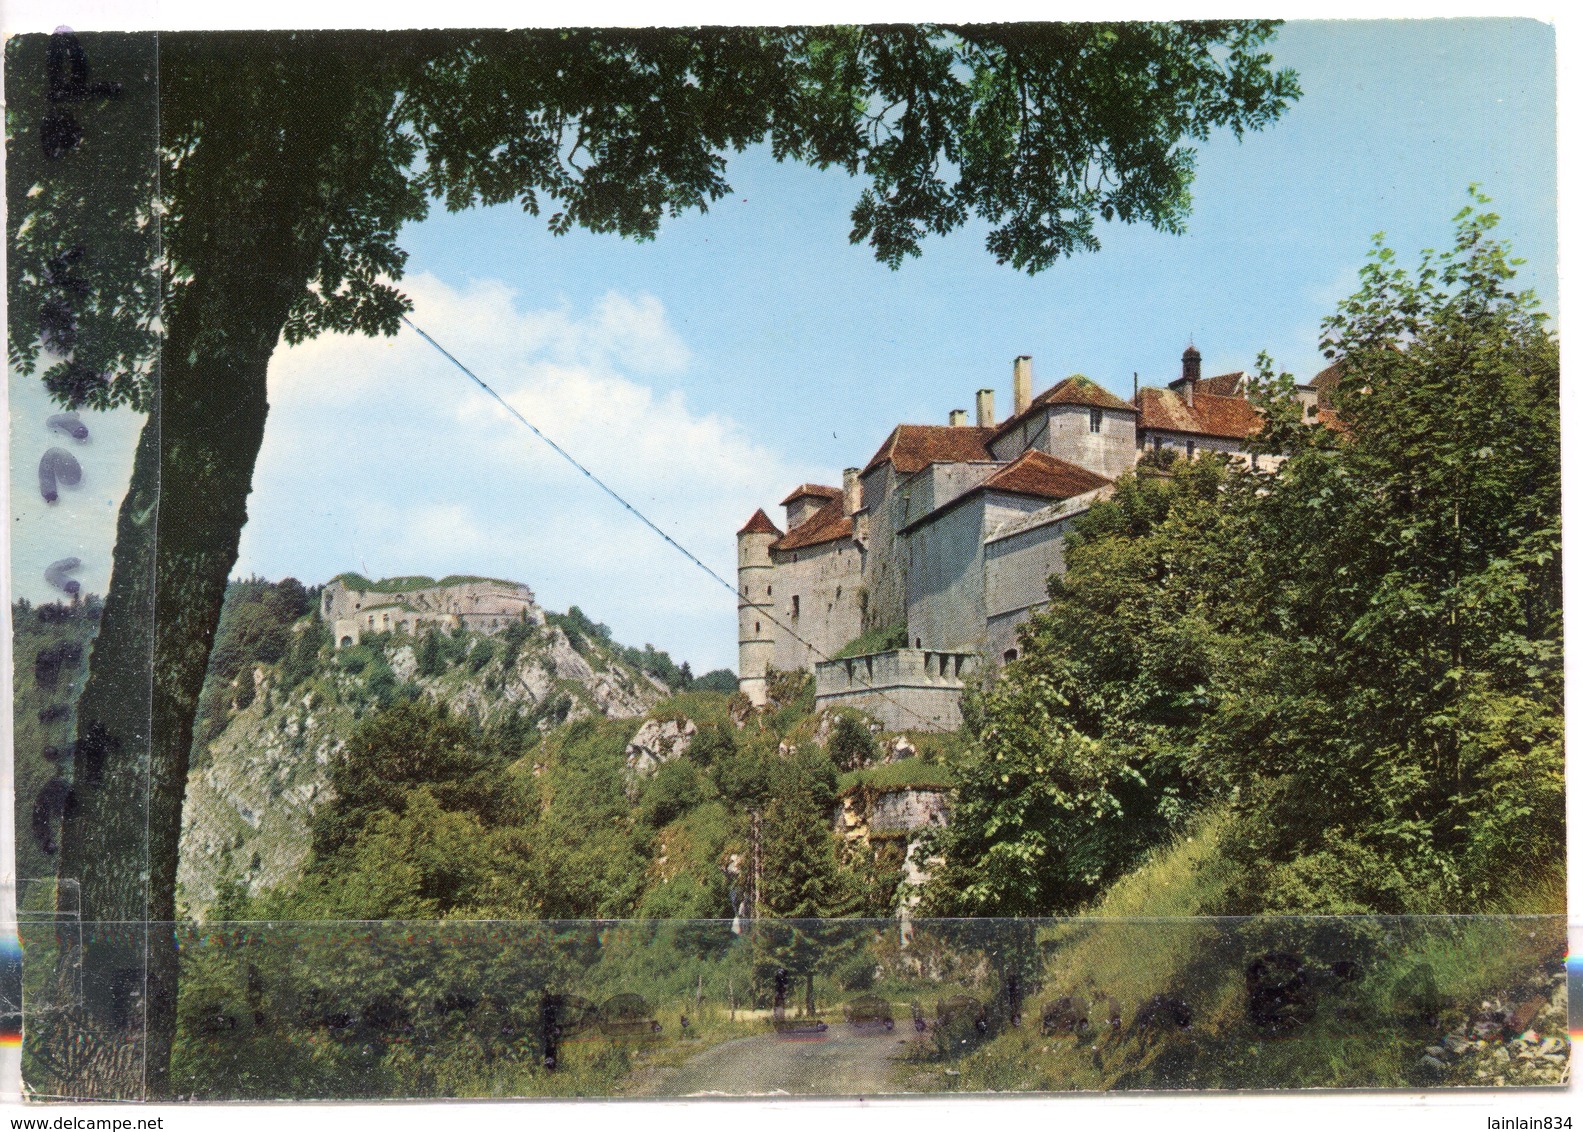 - Pochette, 6 grandes Cartes - ( Doubs ), VILLERS LE LAC - frontière Franco-Suisse, non écrite, TTBE scans.